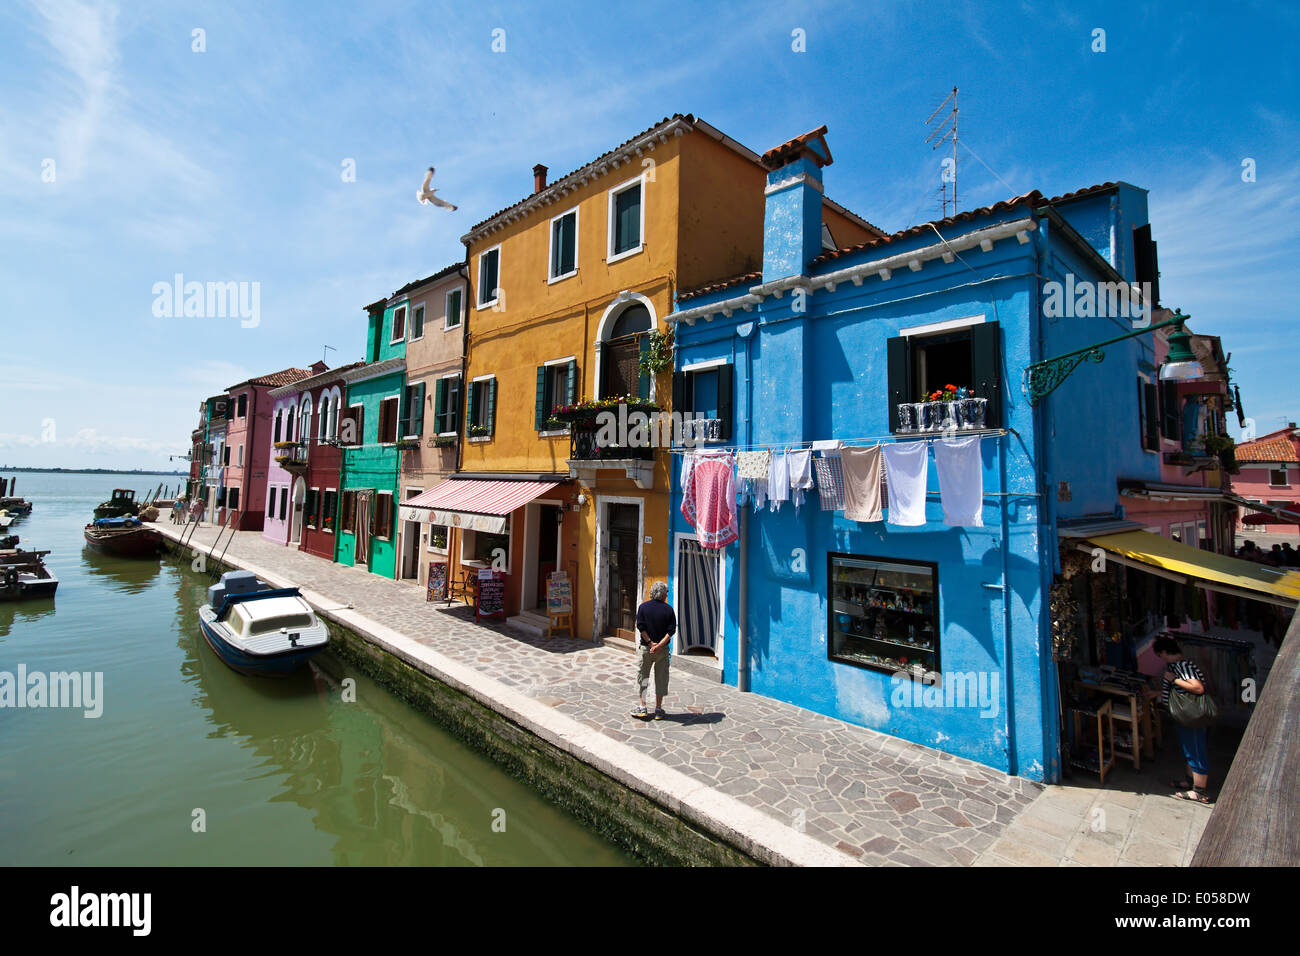 Vale la pena visitar la ciudad de Venecia en Italia. Isla de Burano, die Stadt sehenswerte Venedig en Italien. Insel Burano Foto de stock